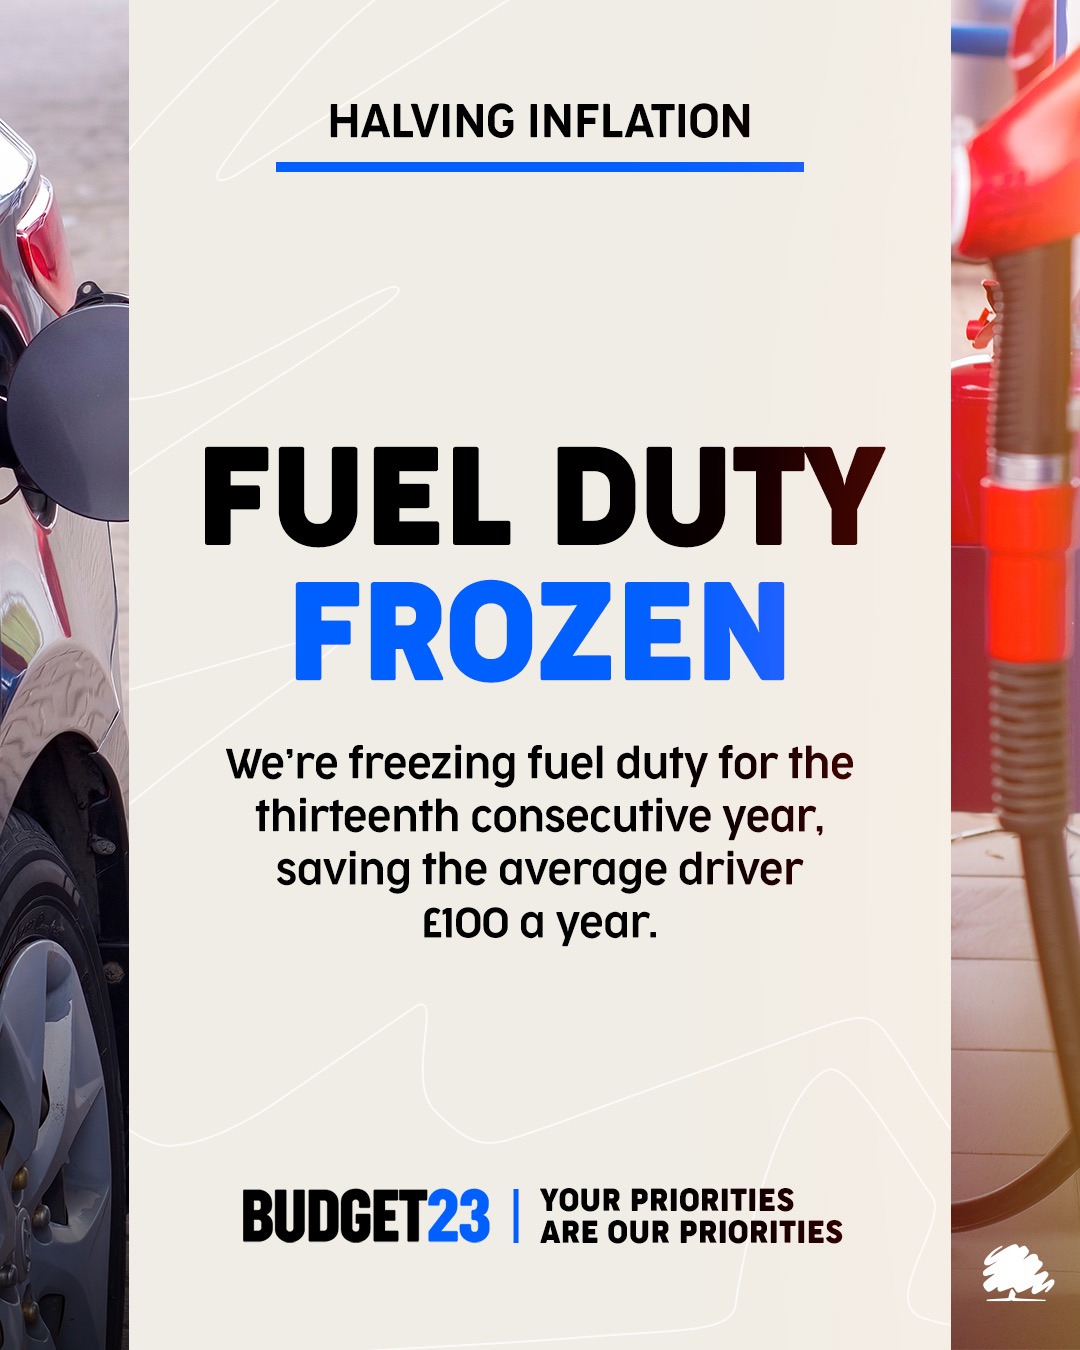 Fuel duty frozen again